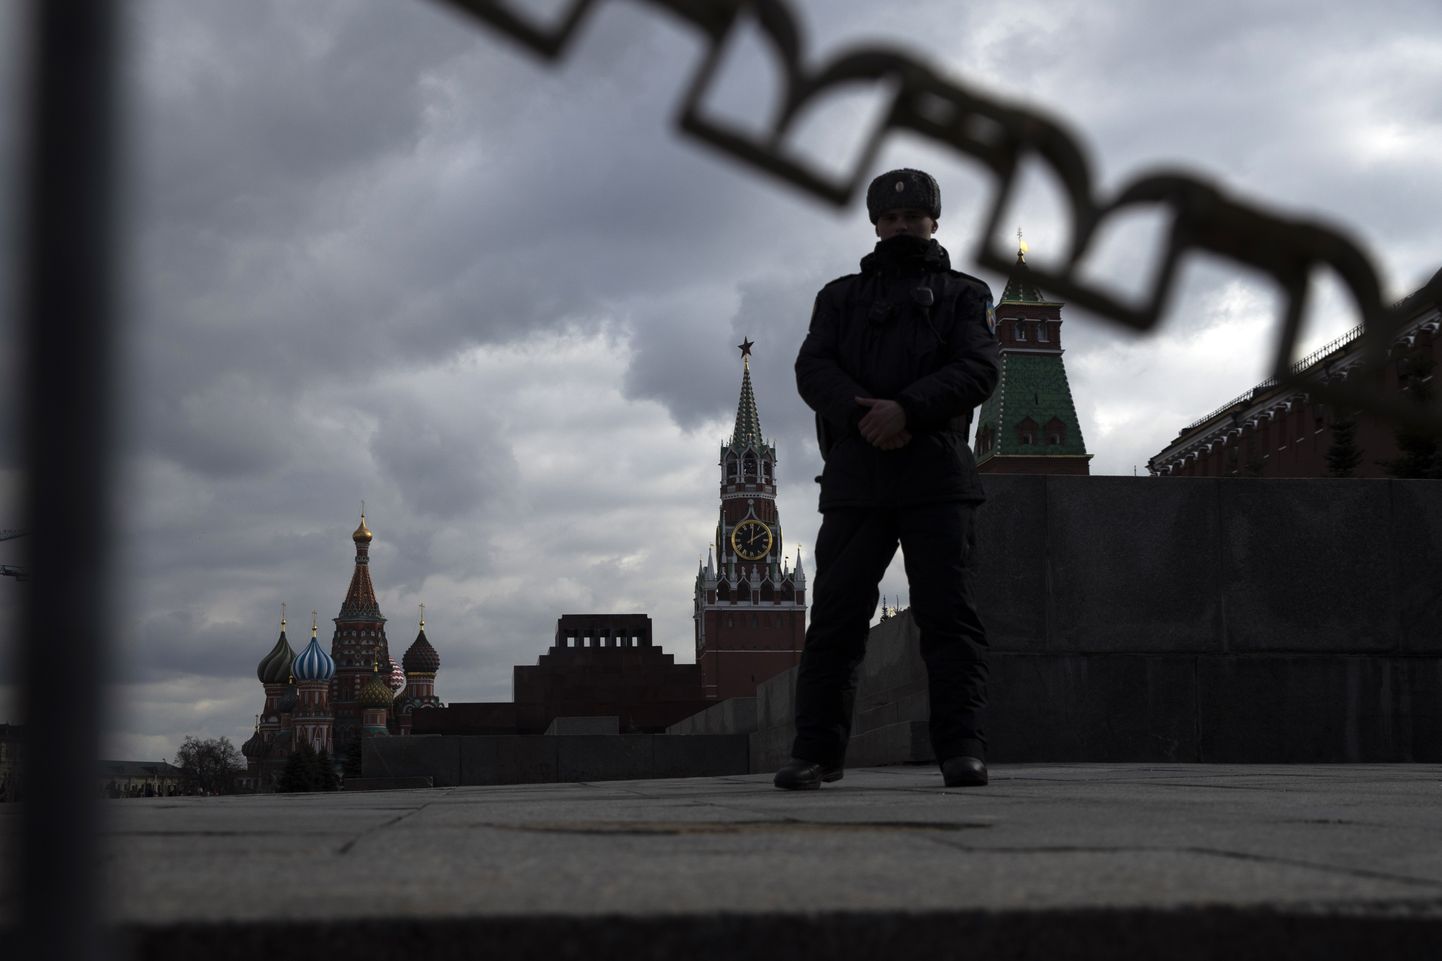 Vene julgeolekuteenistuja Kremli müüri juures korda tagamas.